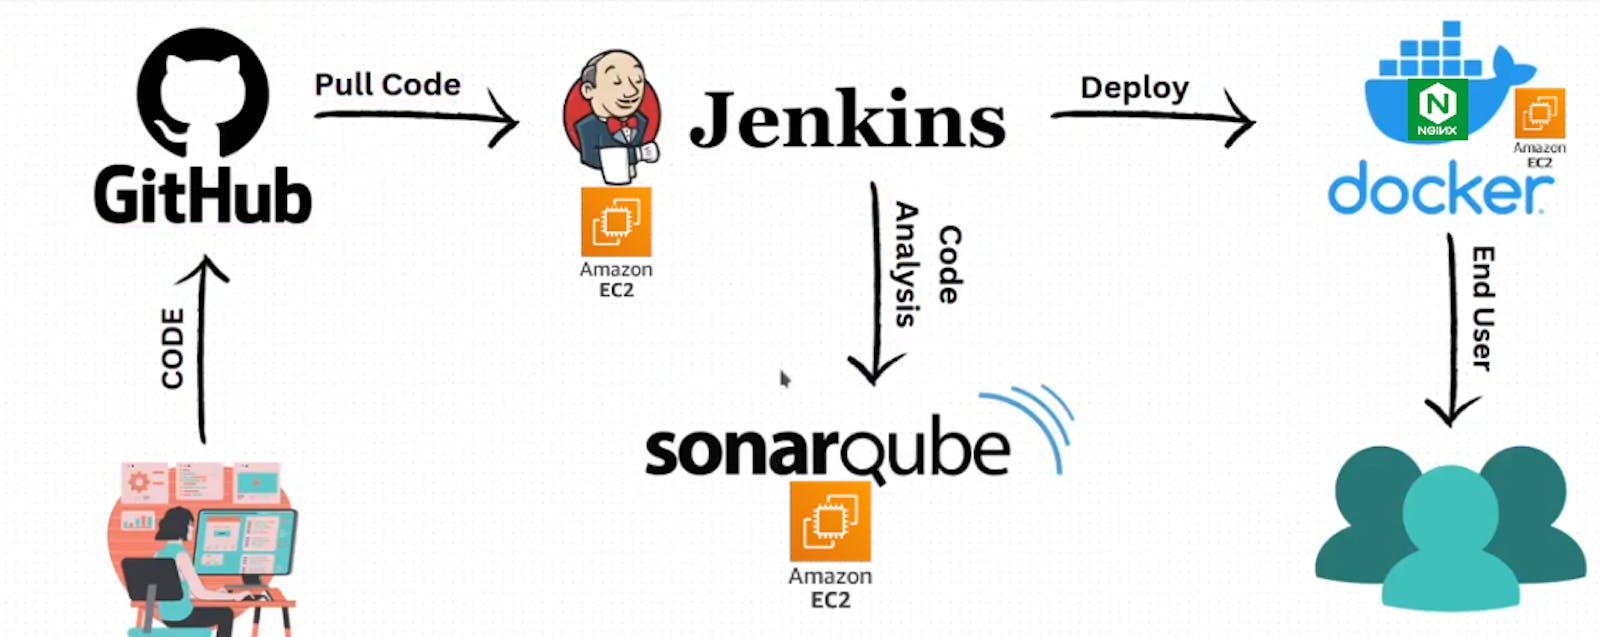 Jenkins-SonarQube-Docker project using Webhooks